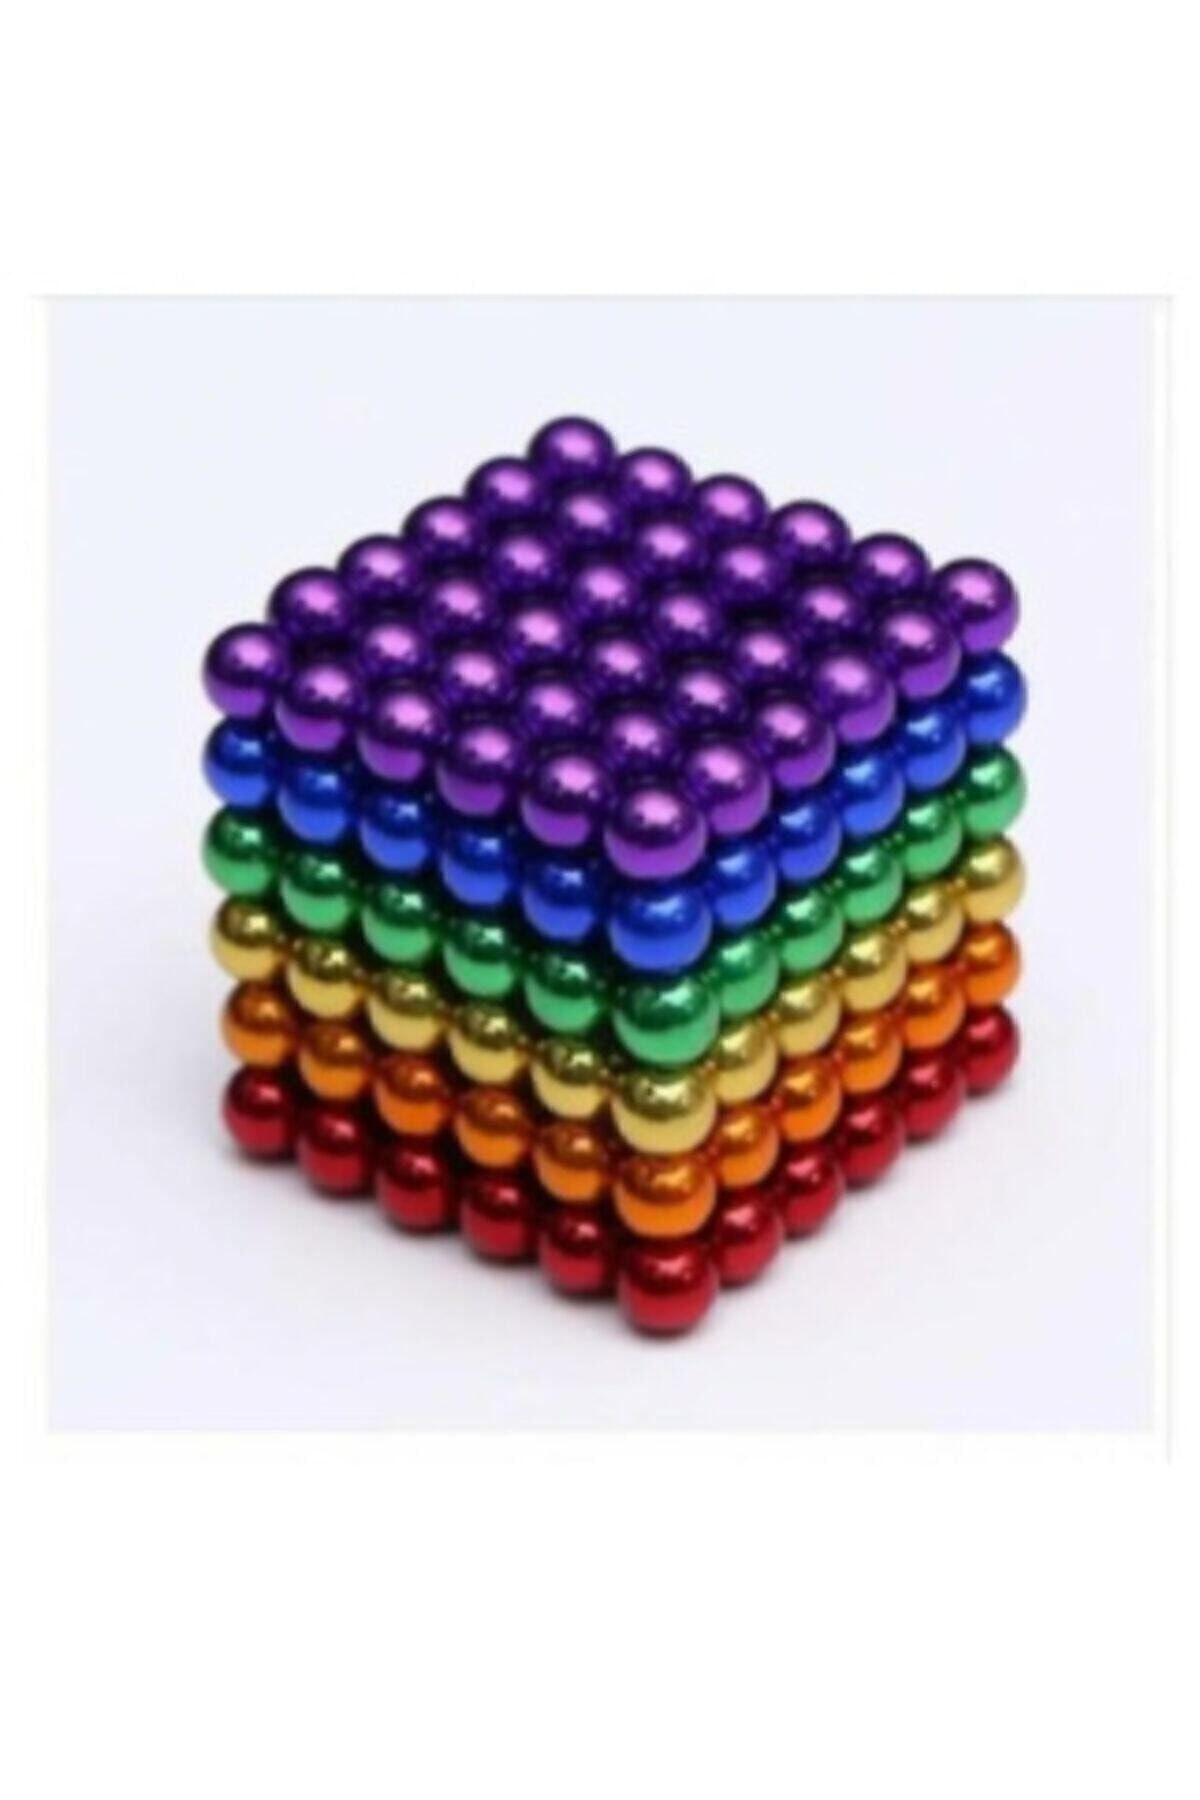 Genel Markalar Neodyum Mıknatıs 6 Farklı Renkli Sihirli Manyetik Toplar 216 Parça